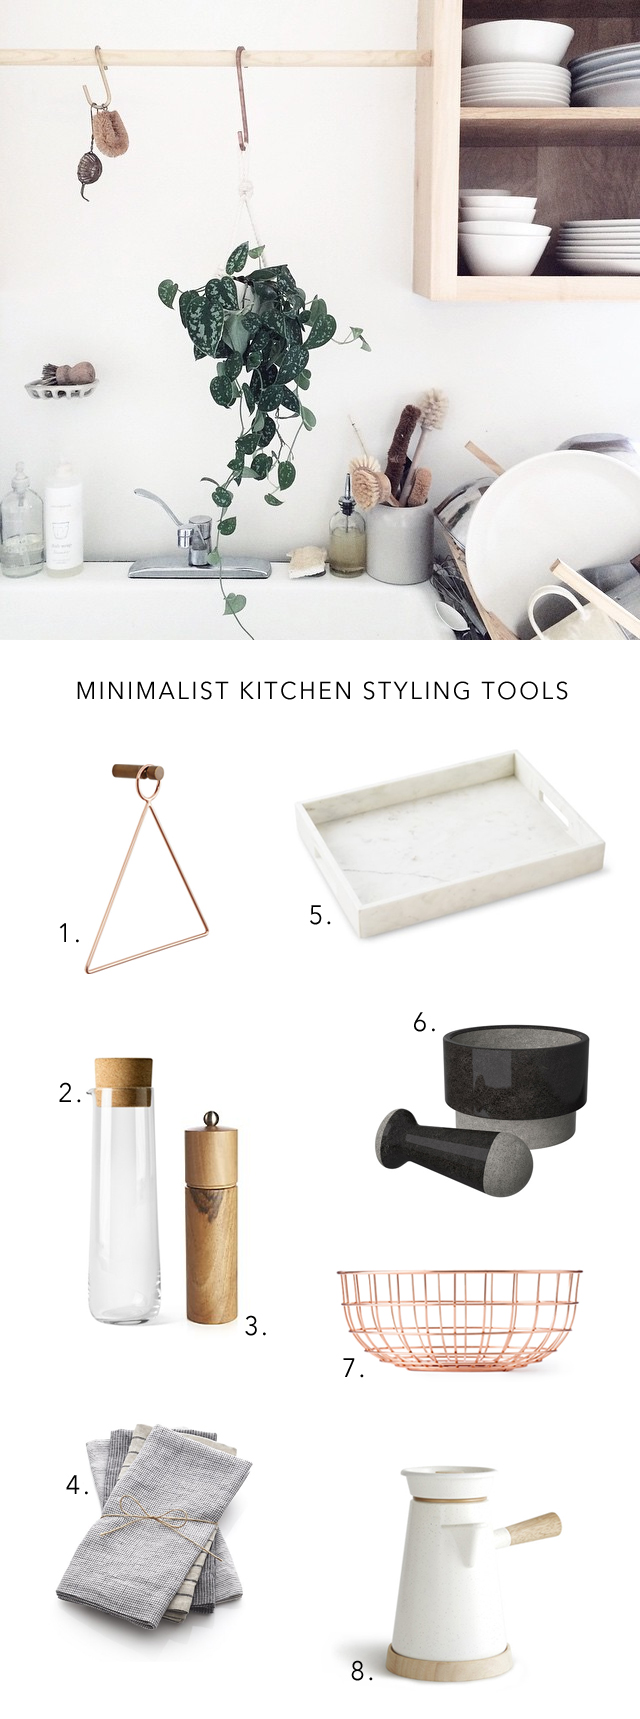 minimalist kitchen tools for styling the kitchen via @citysage